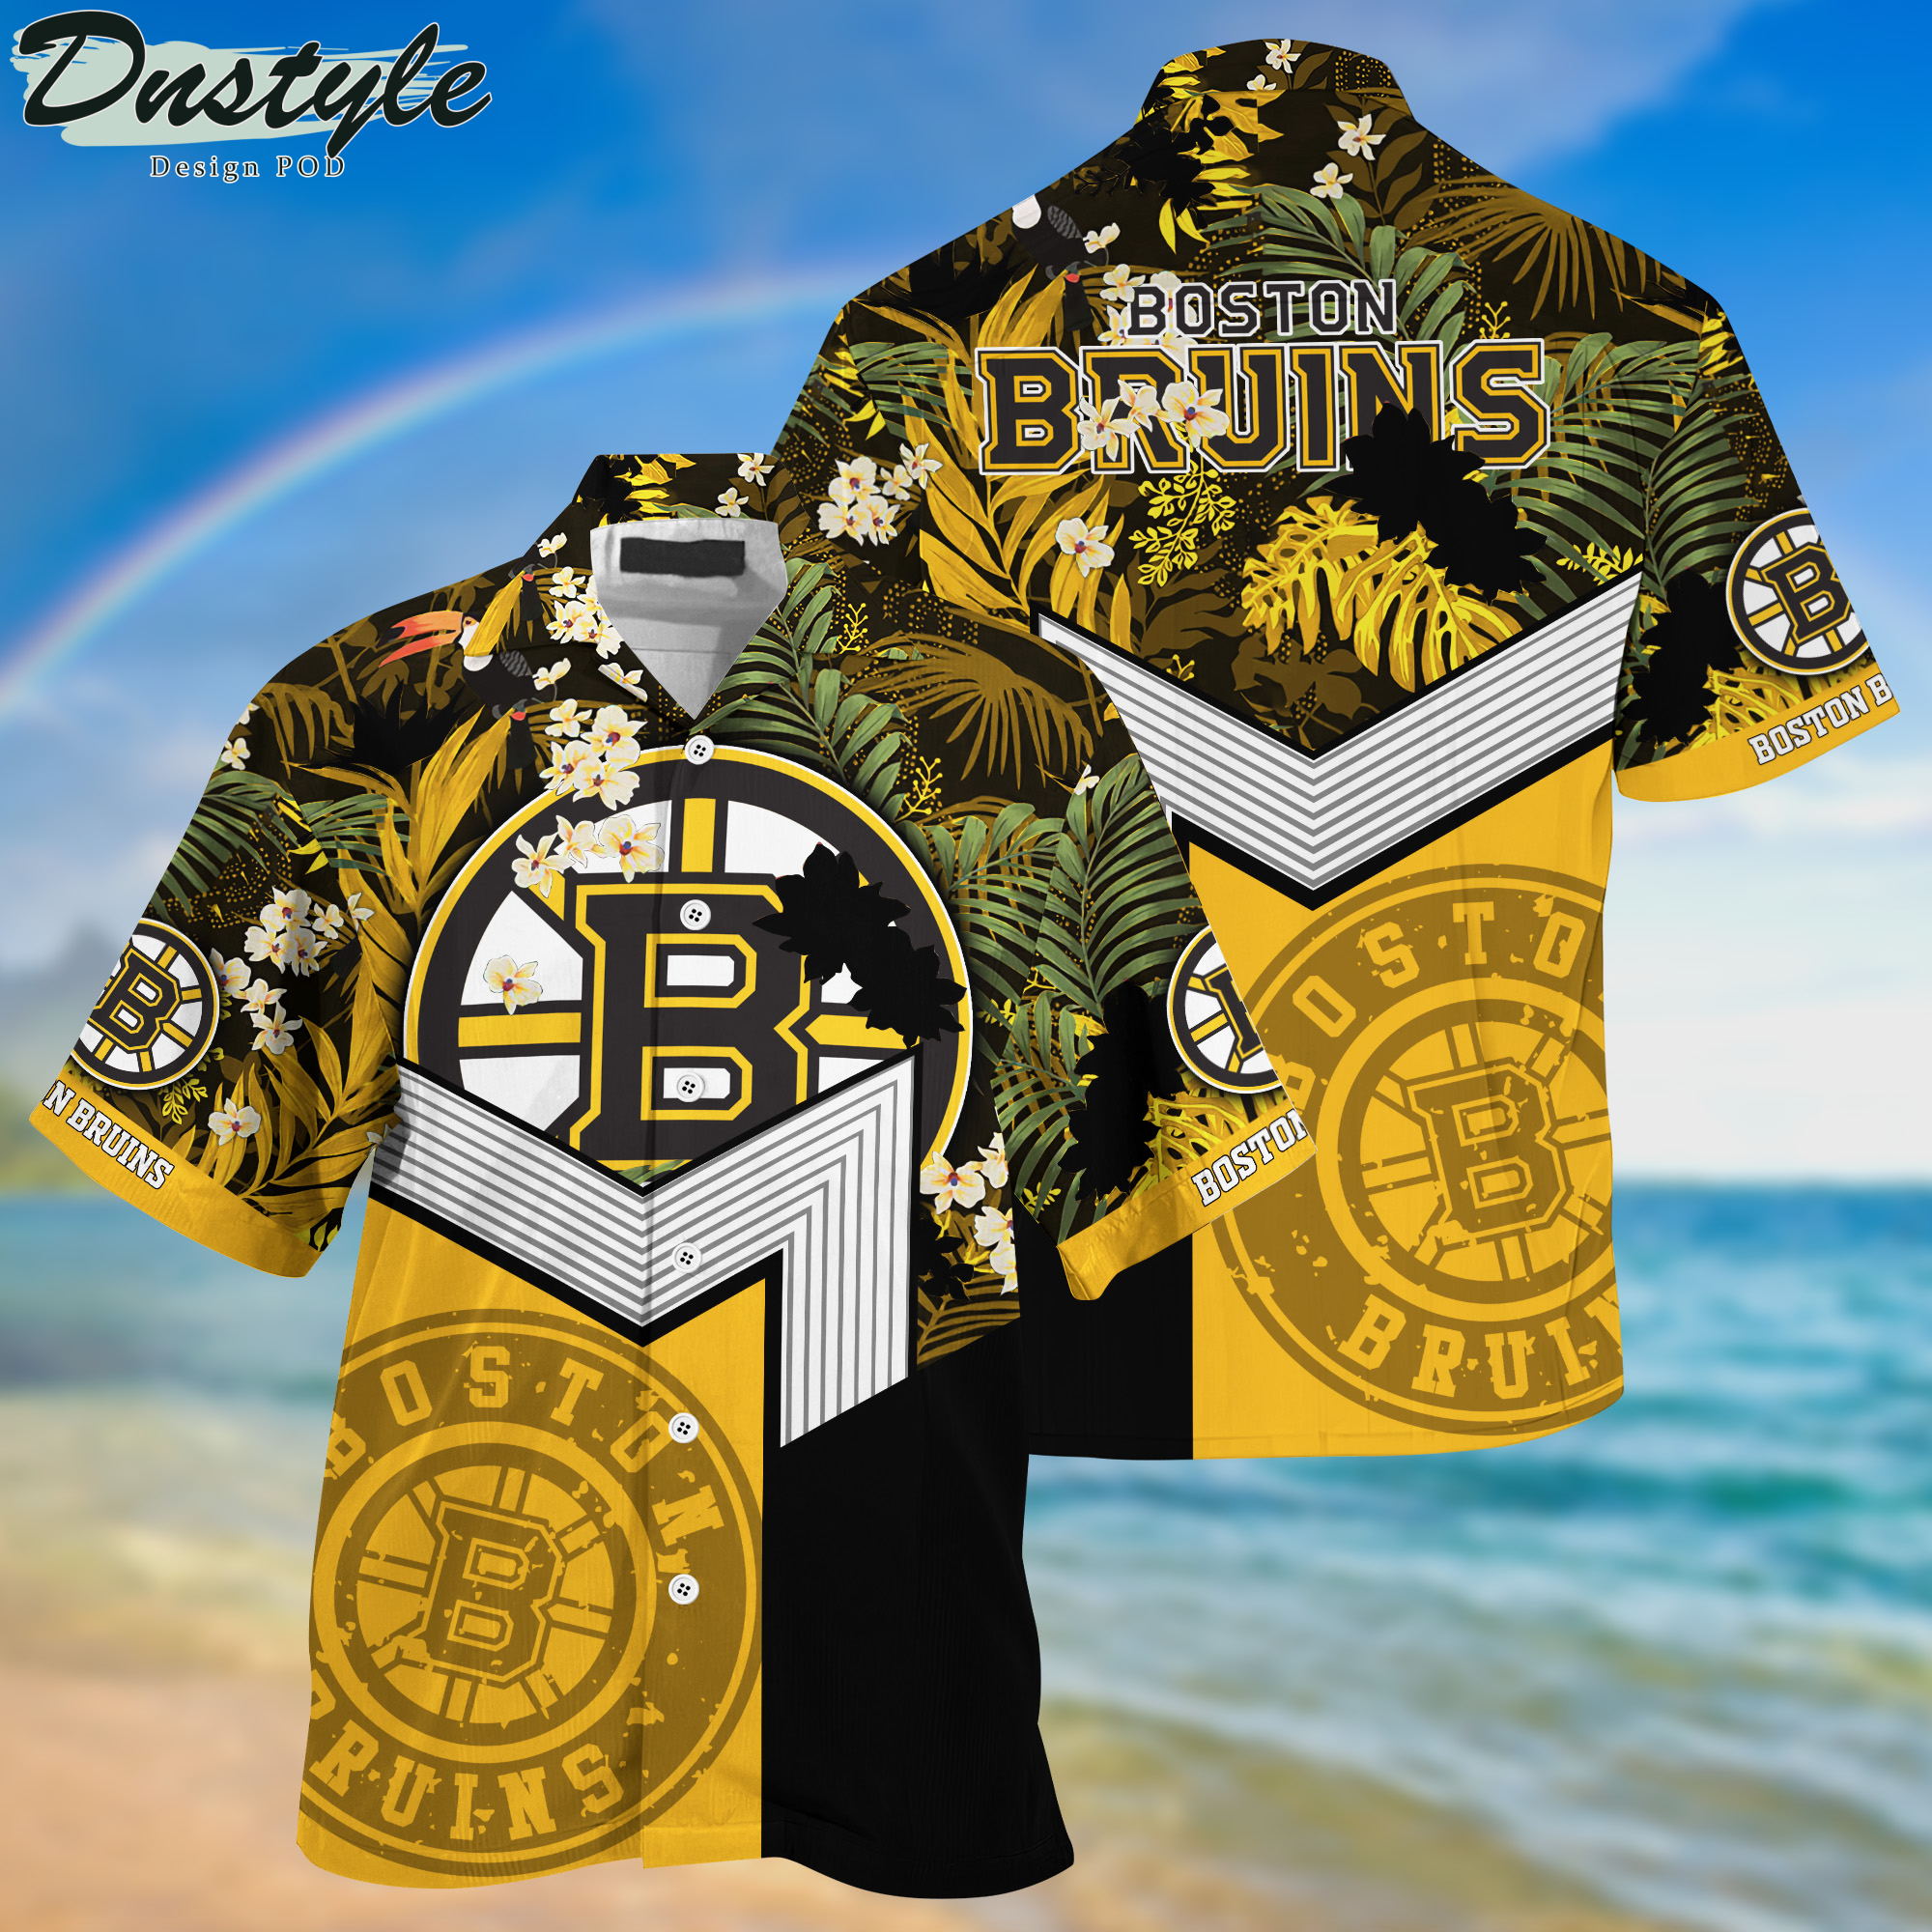 Boston Bruins Hawaii Shirt And Shorts New Collection